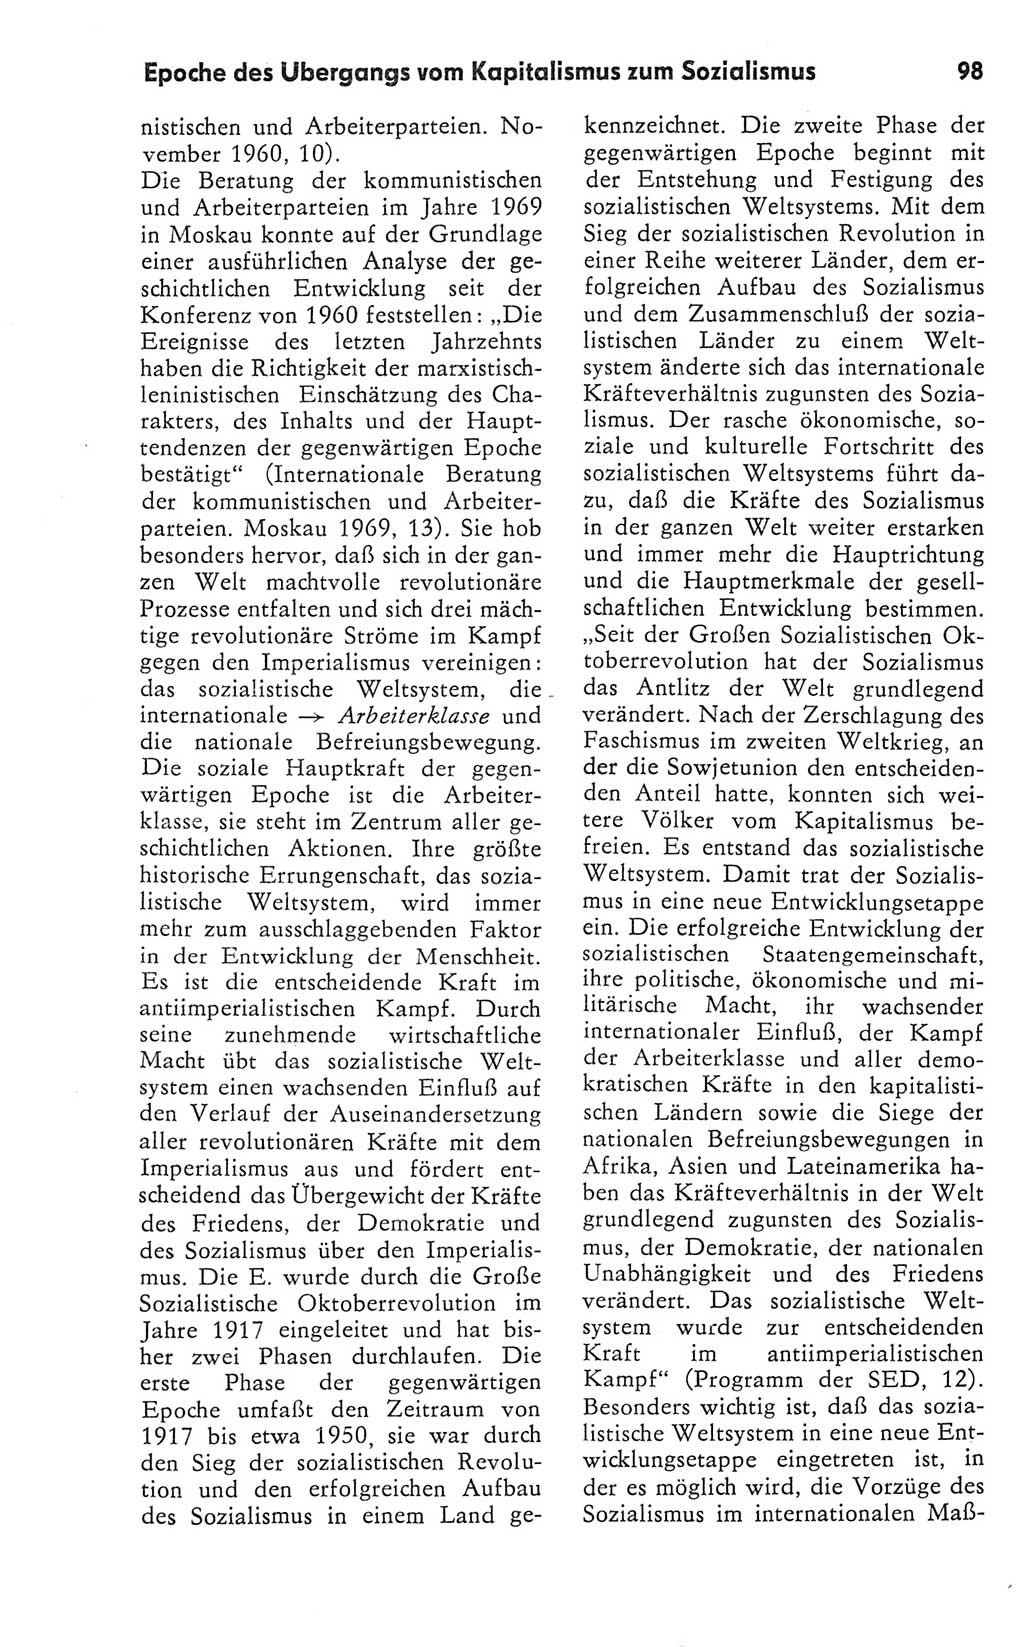 Kleines Wörterbuch der marxistisch-leninistischen Philosophie [Deutsche Demokratische Republik (DDR)] 1981, Seite 98 (Kl. Wb. ML Phil. DDR 1981, S. 98)